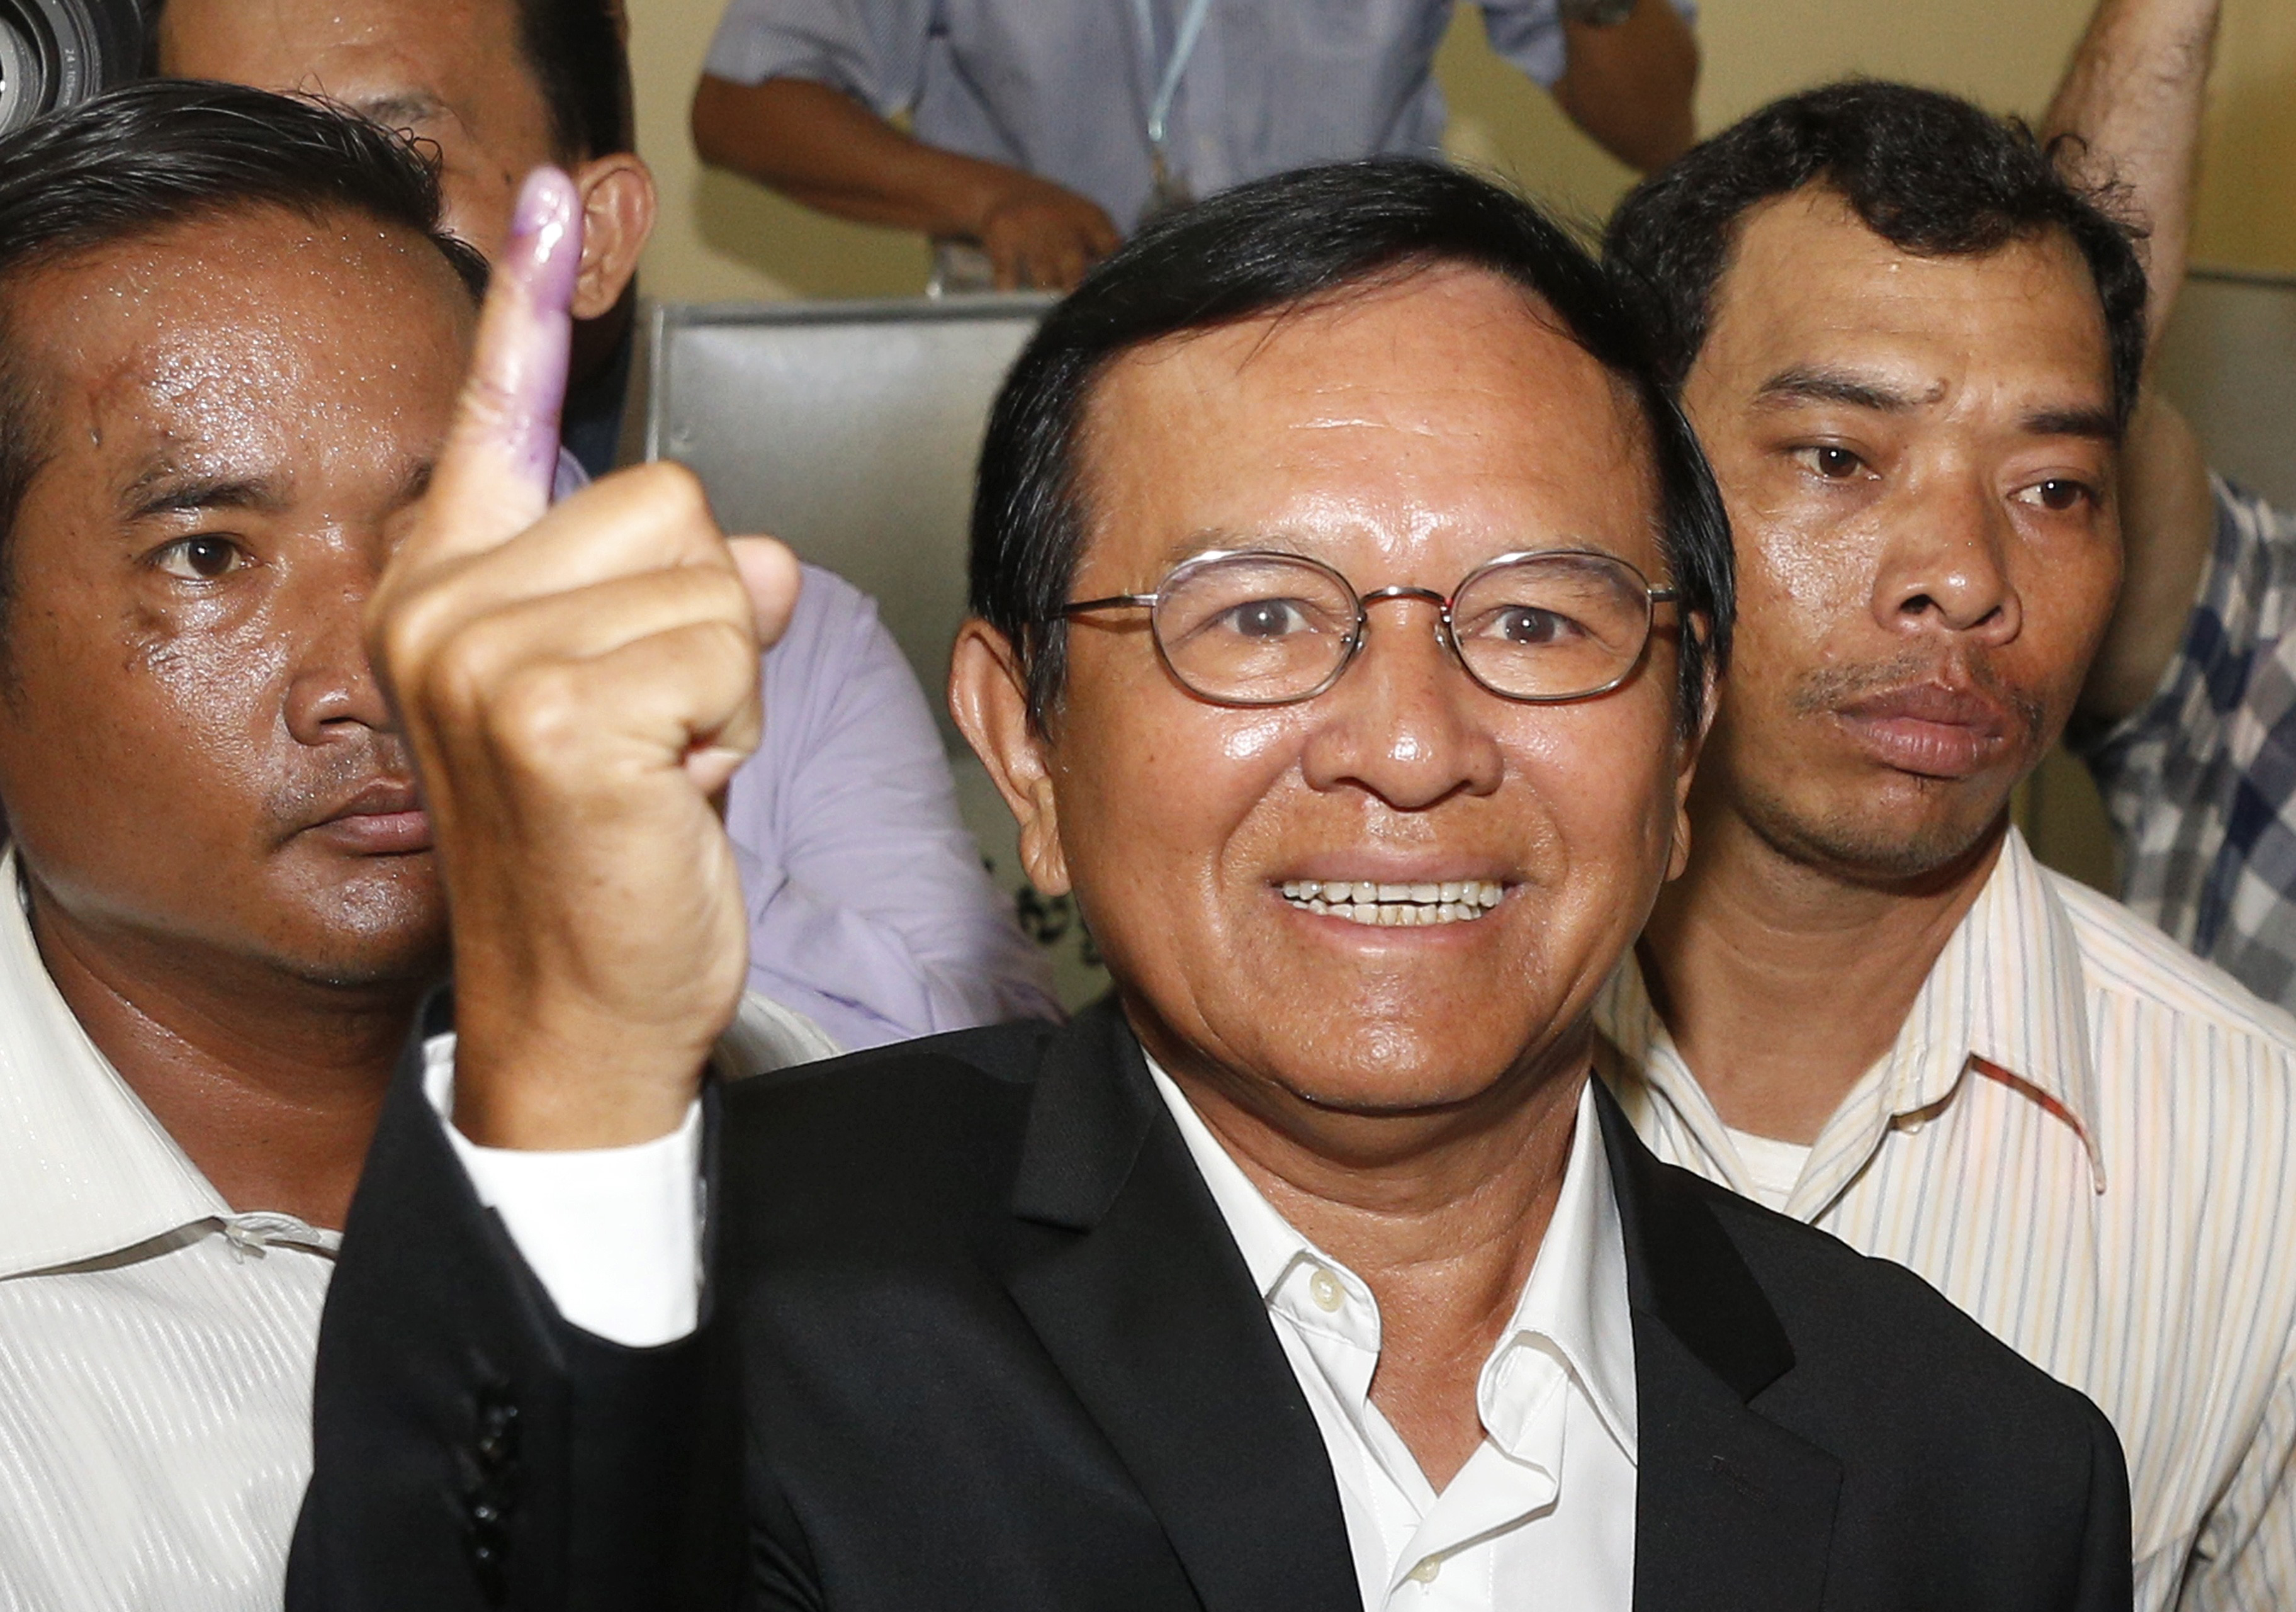 Árulással és kémkedéssel vádolnak egy ellenzéki vezetőt Kambodzsában